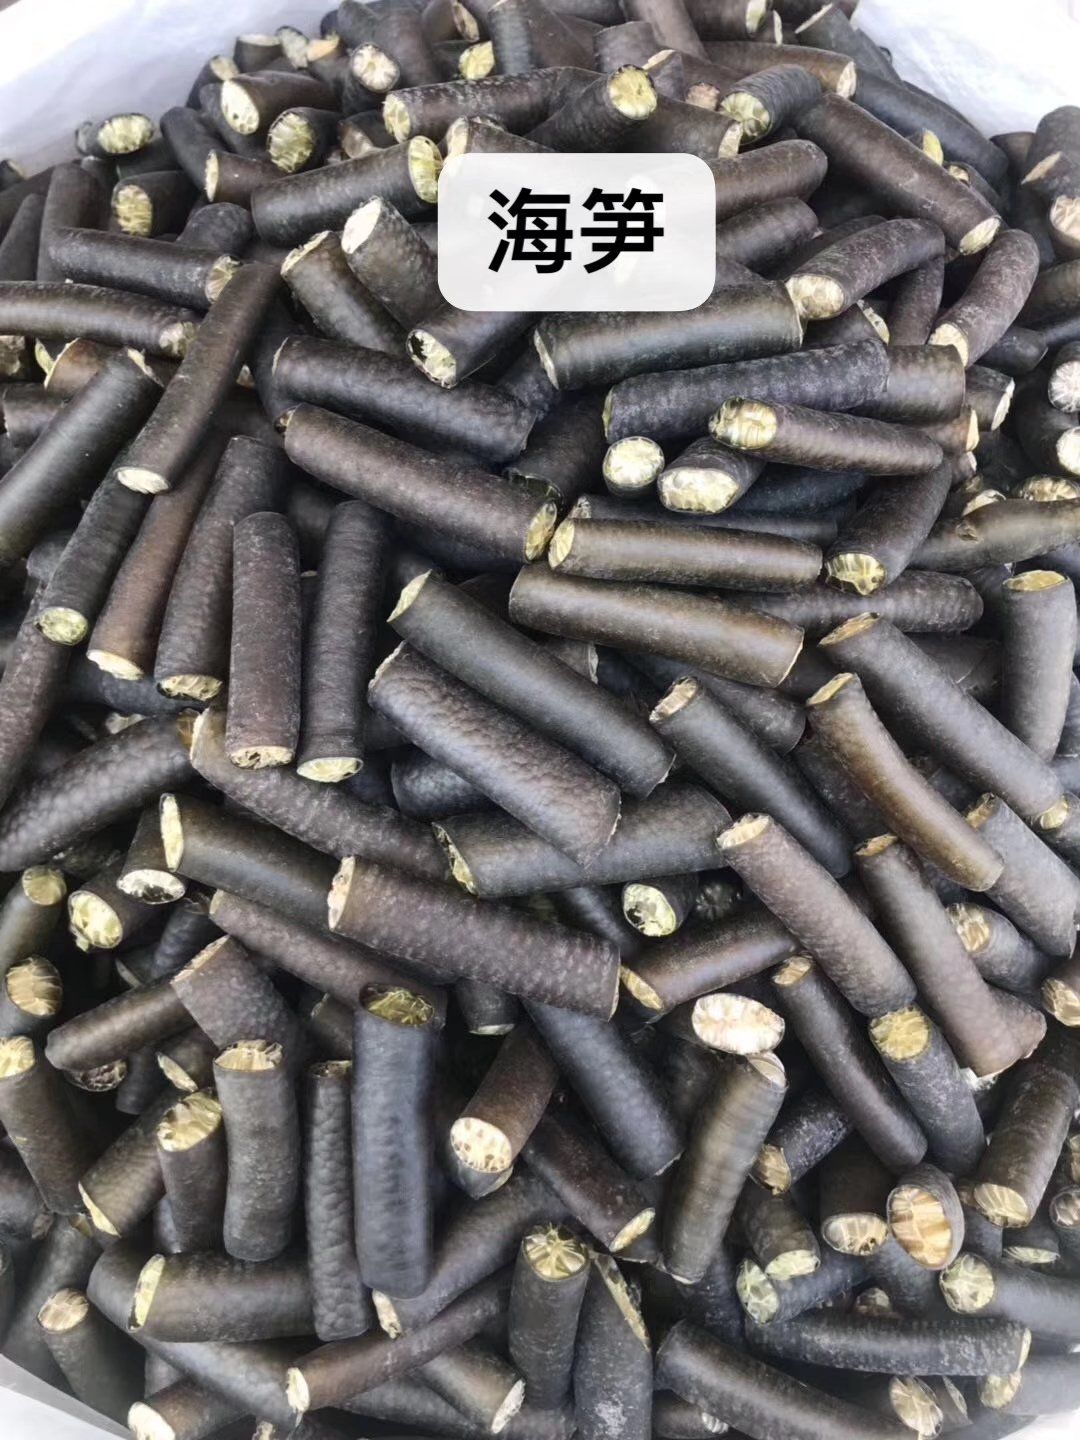 郑州海笋 每件
30斤